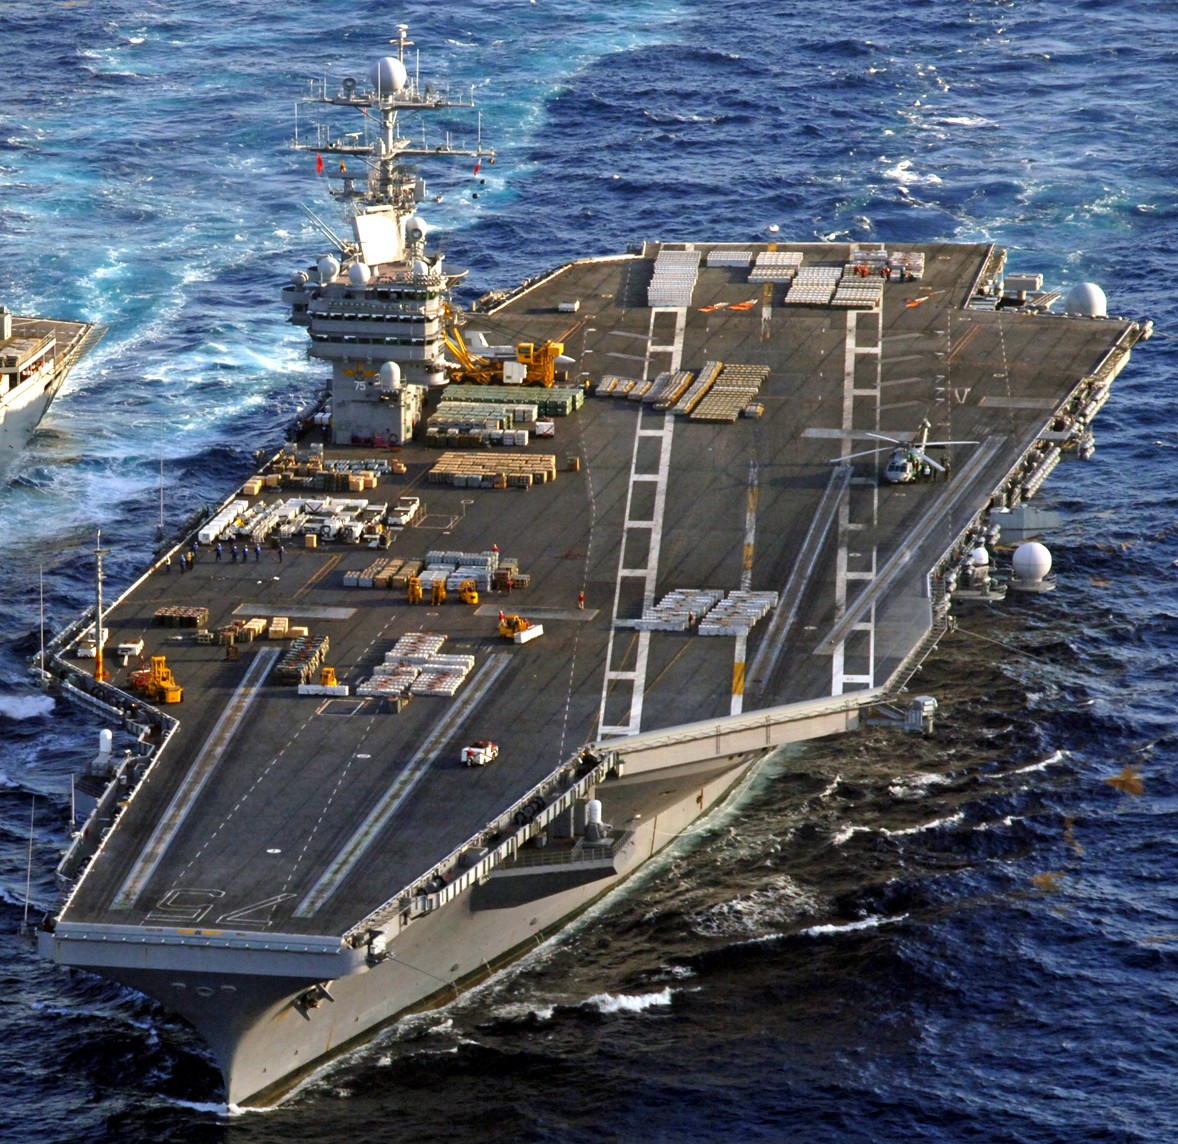 cvn-75 uss harry s. truman aircraft carrier 149